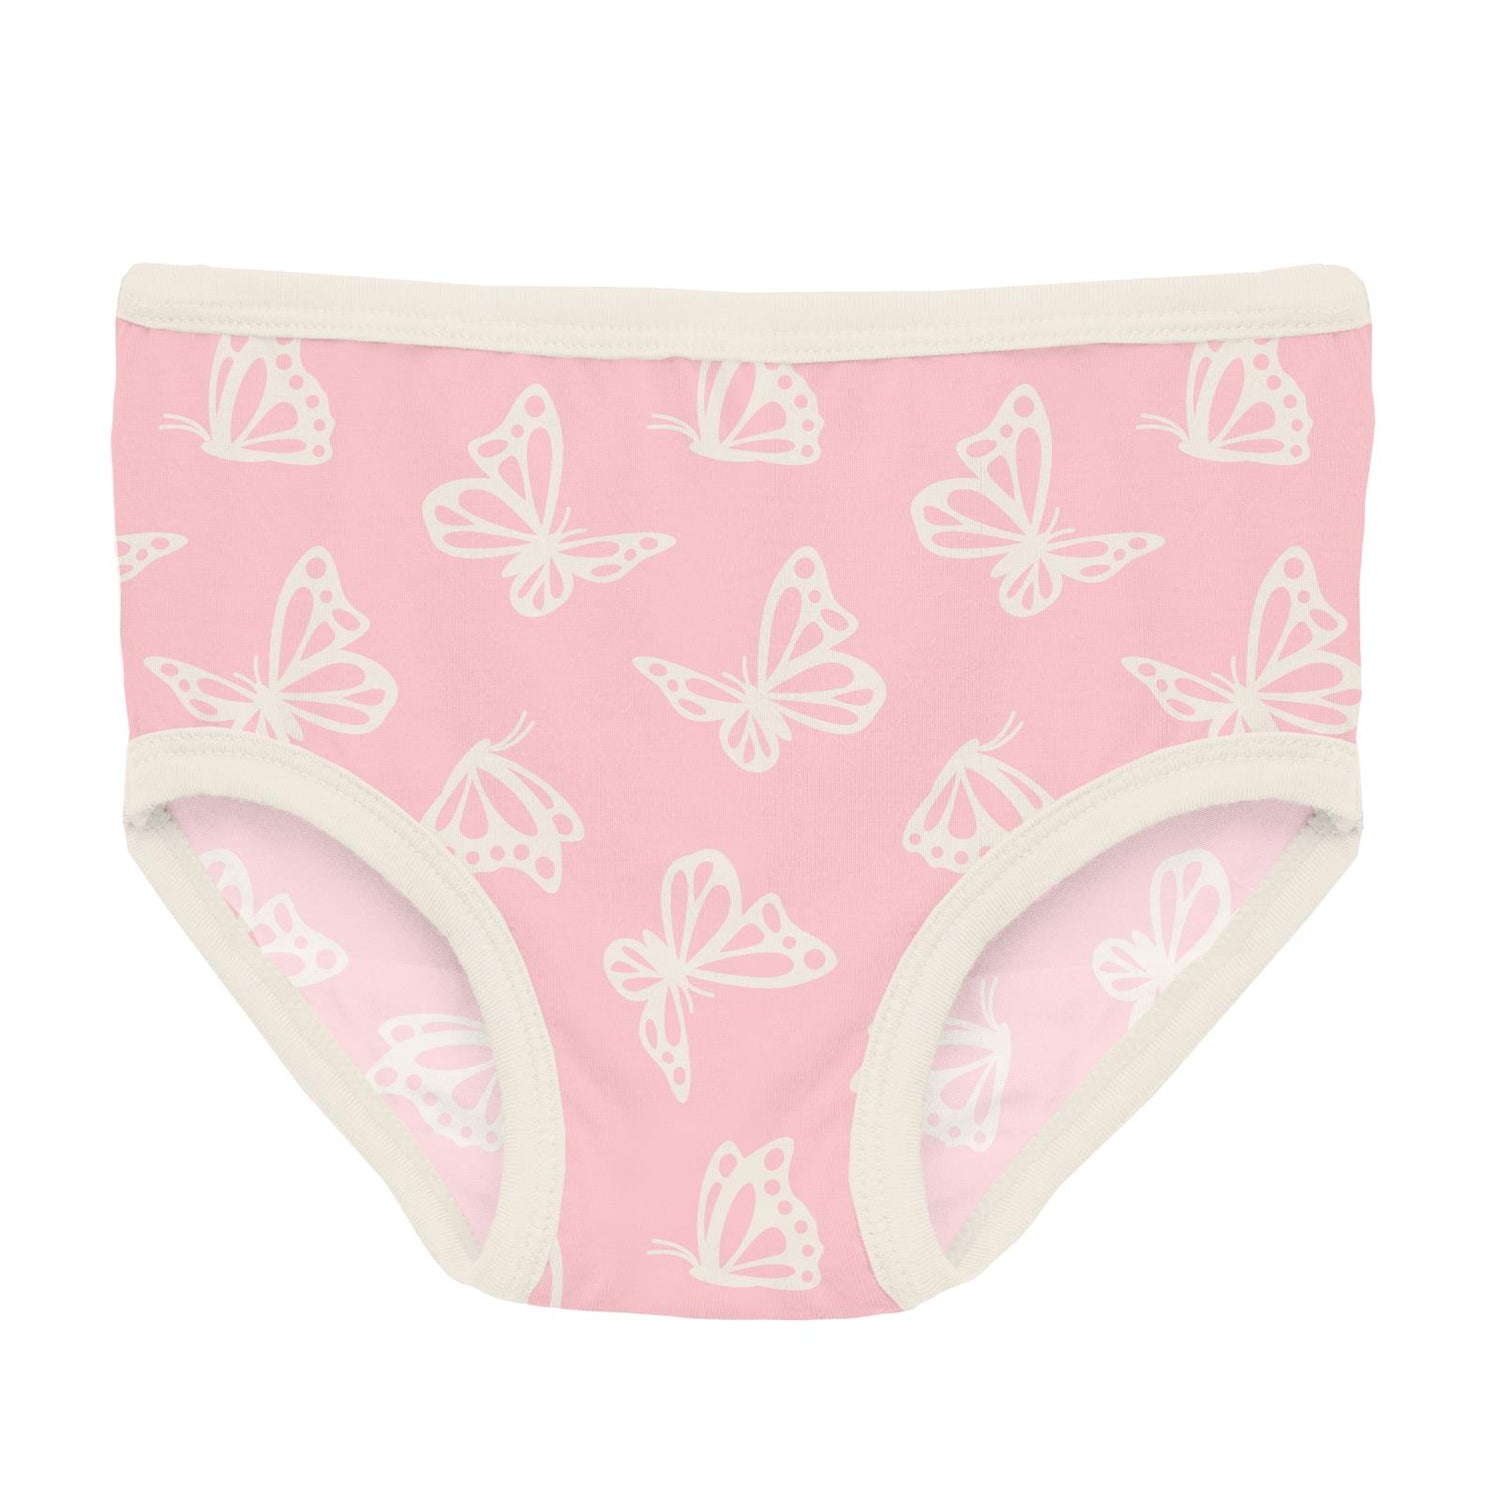 Kickee Pants Bamboo Girls Underwear - Calypso Pretzel Pup